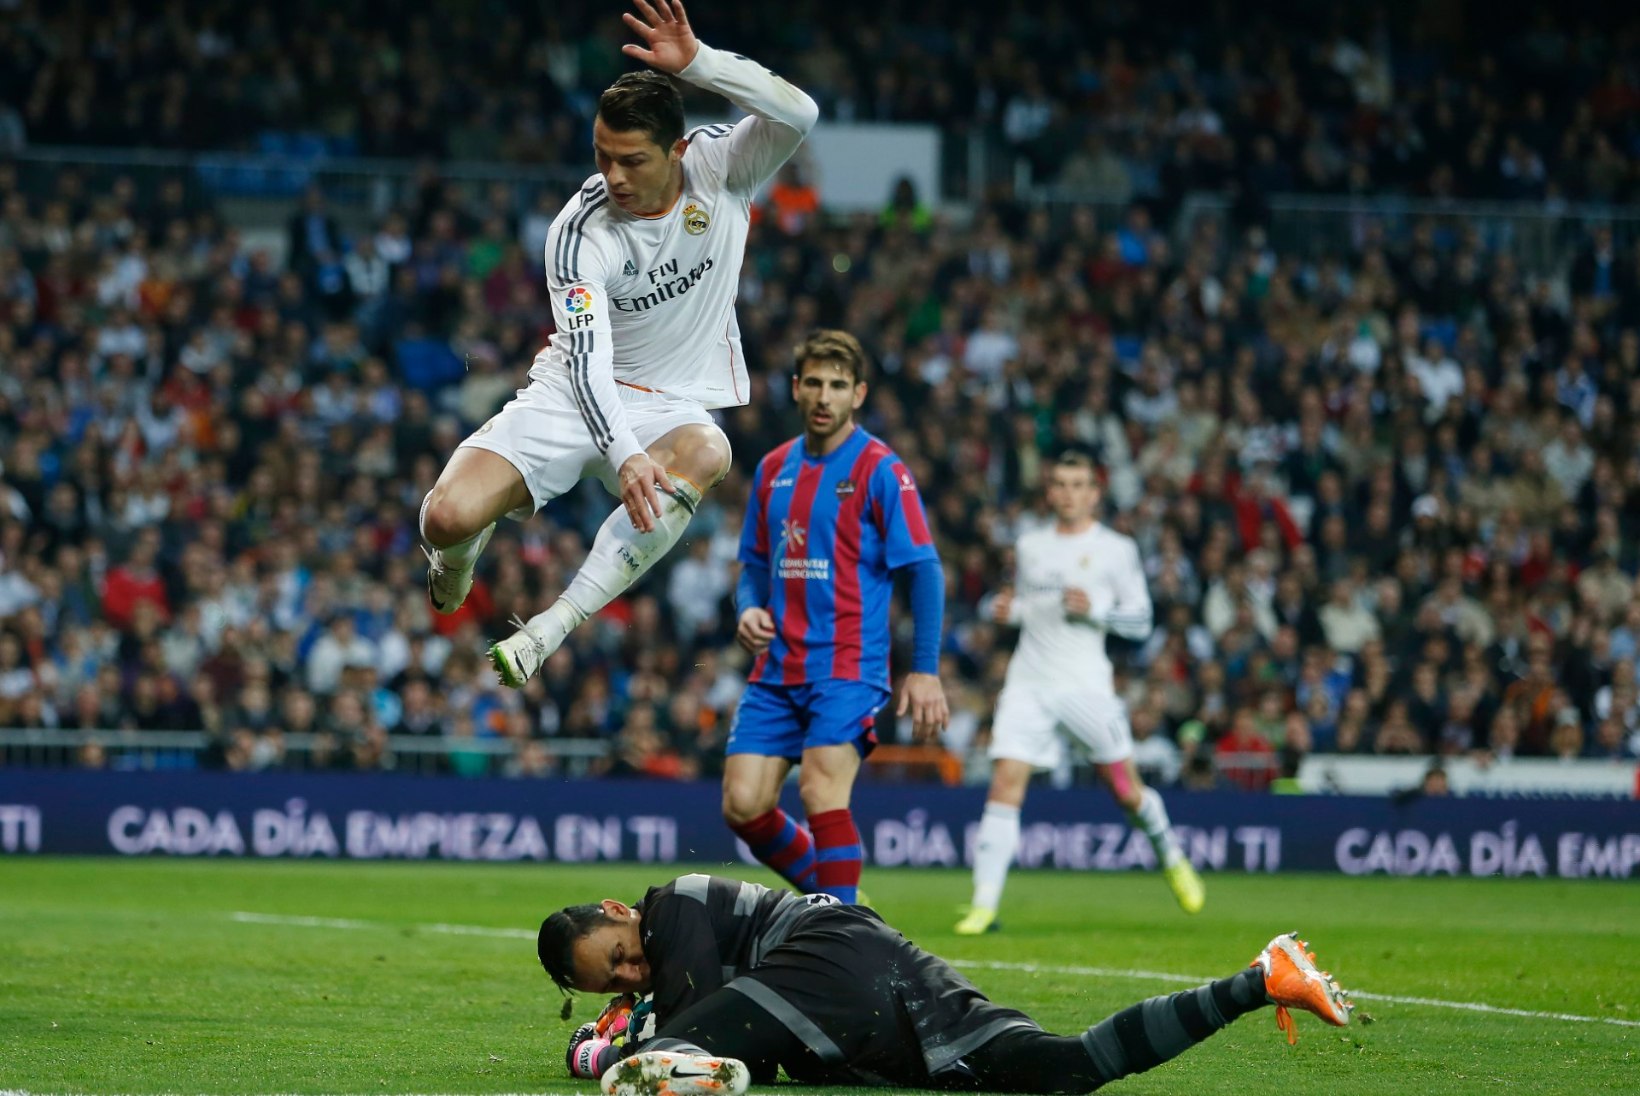 GALERII: Madridi Real tõusis taas ainuliidriks